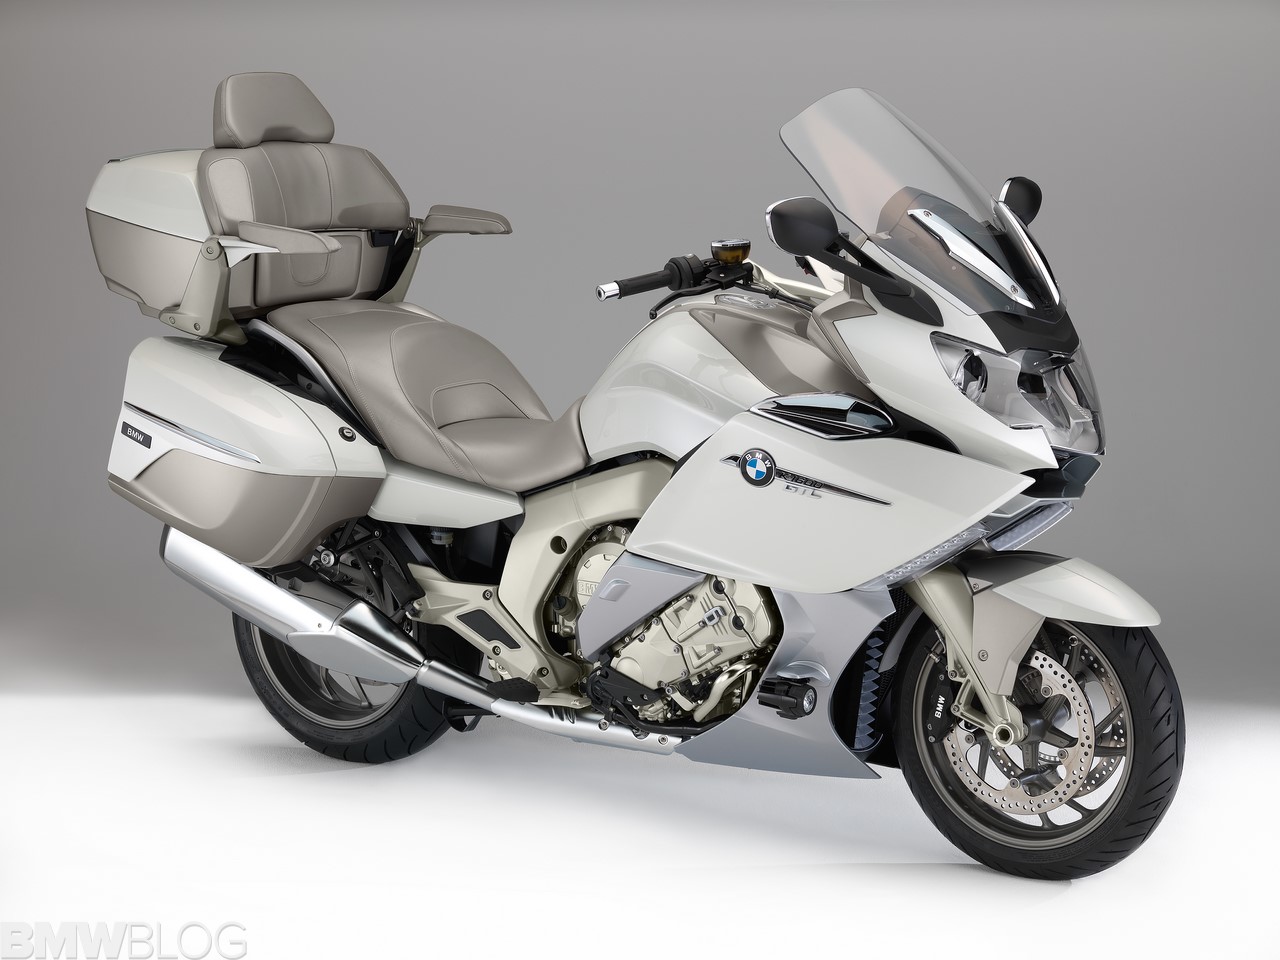 Operation Motorrad: A Dad gets a surprising gift - BMW K1600 GTL